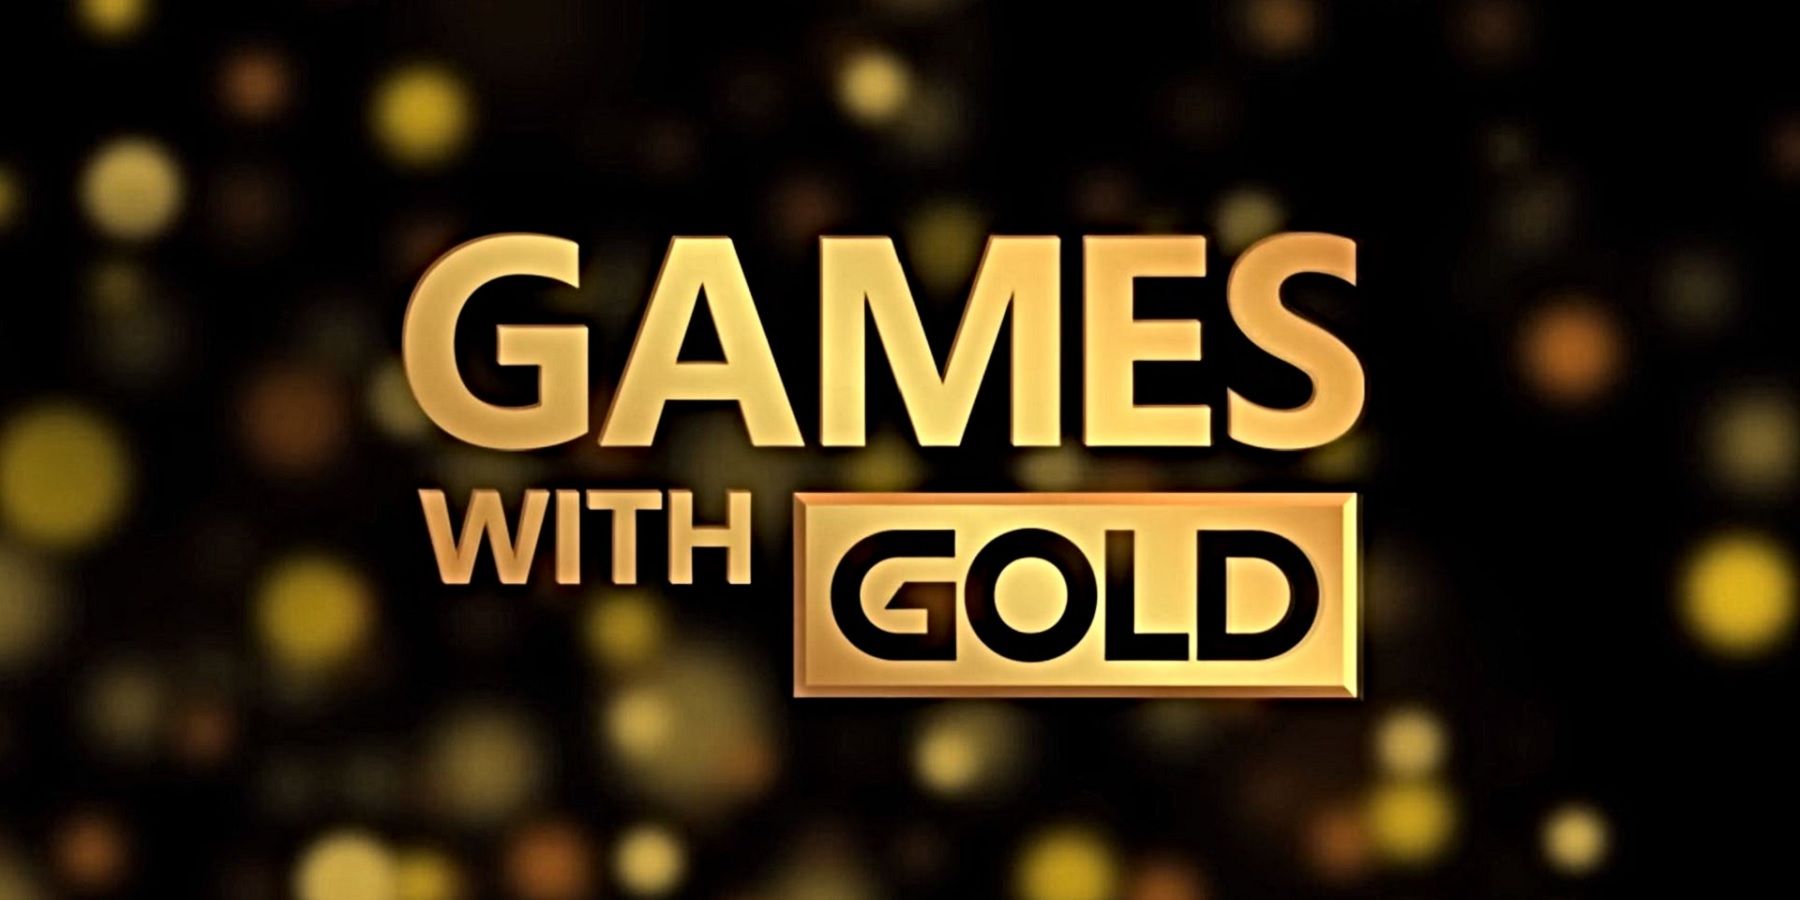 Az Xbox ingyenes játékok aranyval 2021 októberére feltárják